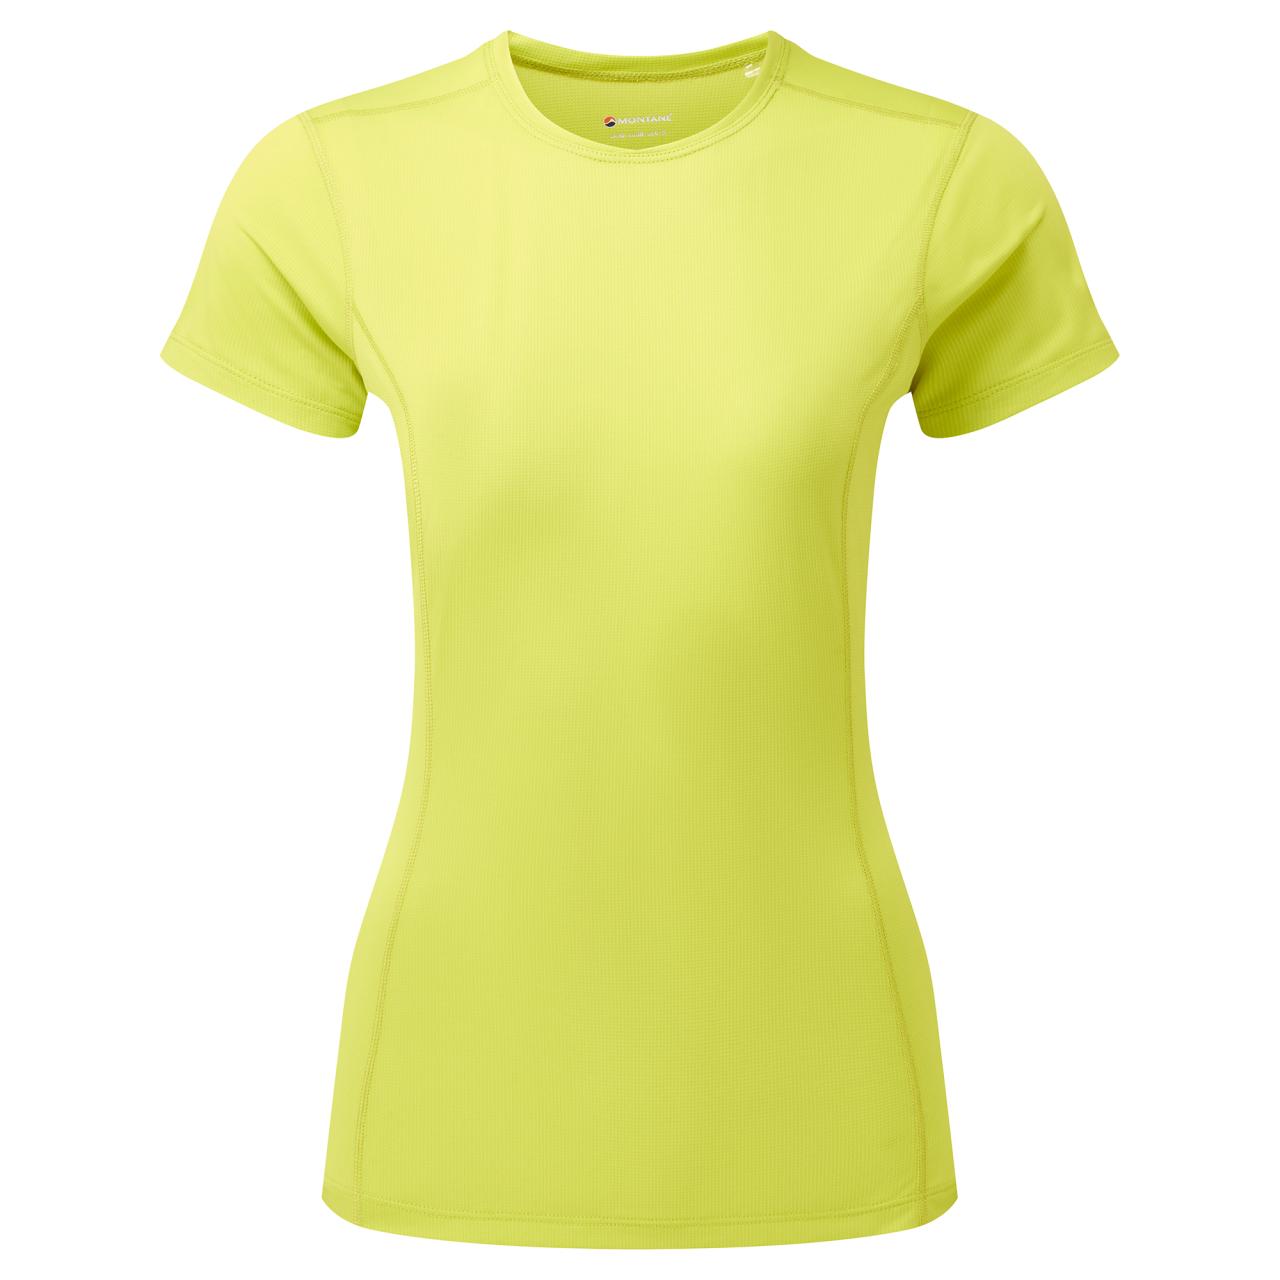 FEM DART LITE T-SHIRT-CITRUS SPRING-UK6/XXS dámské triko žlutozelené